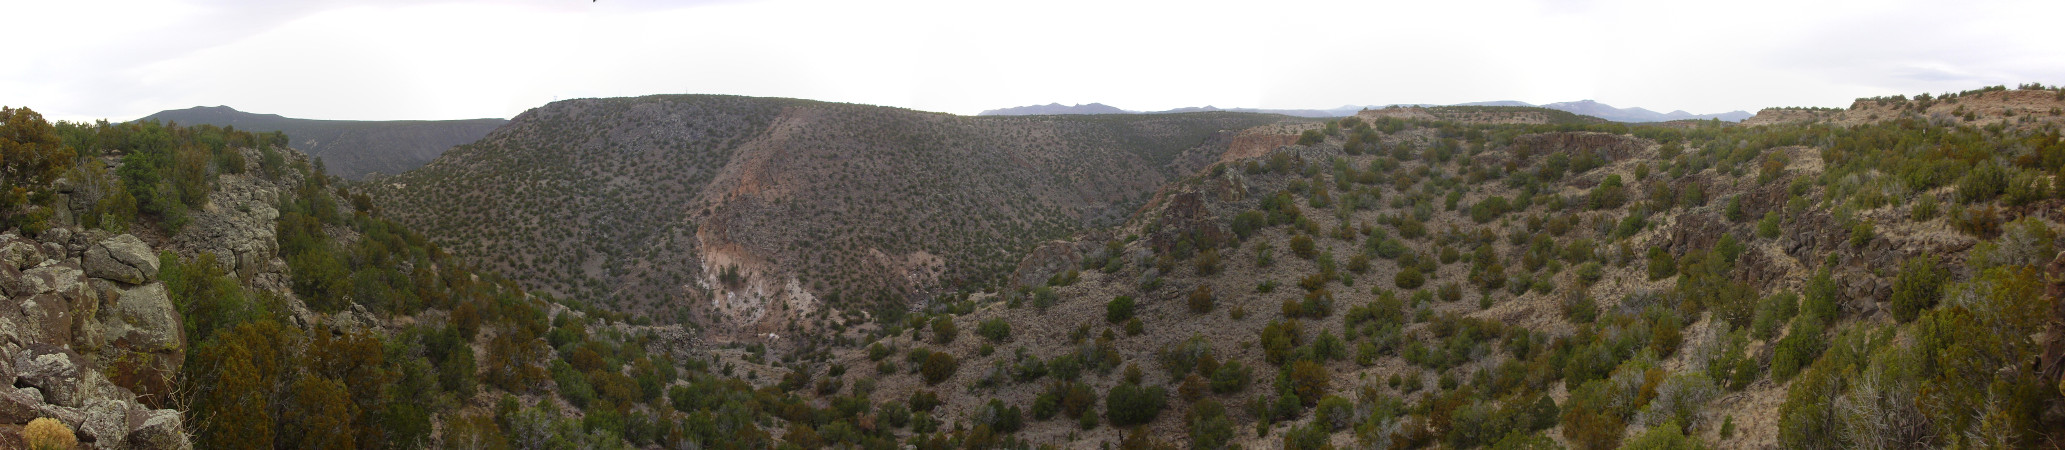 Potrillo
          Canyon panorama